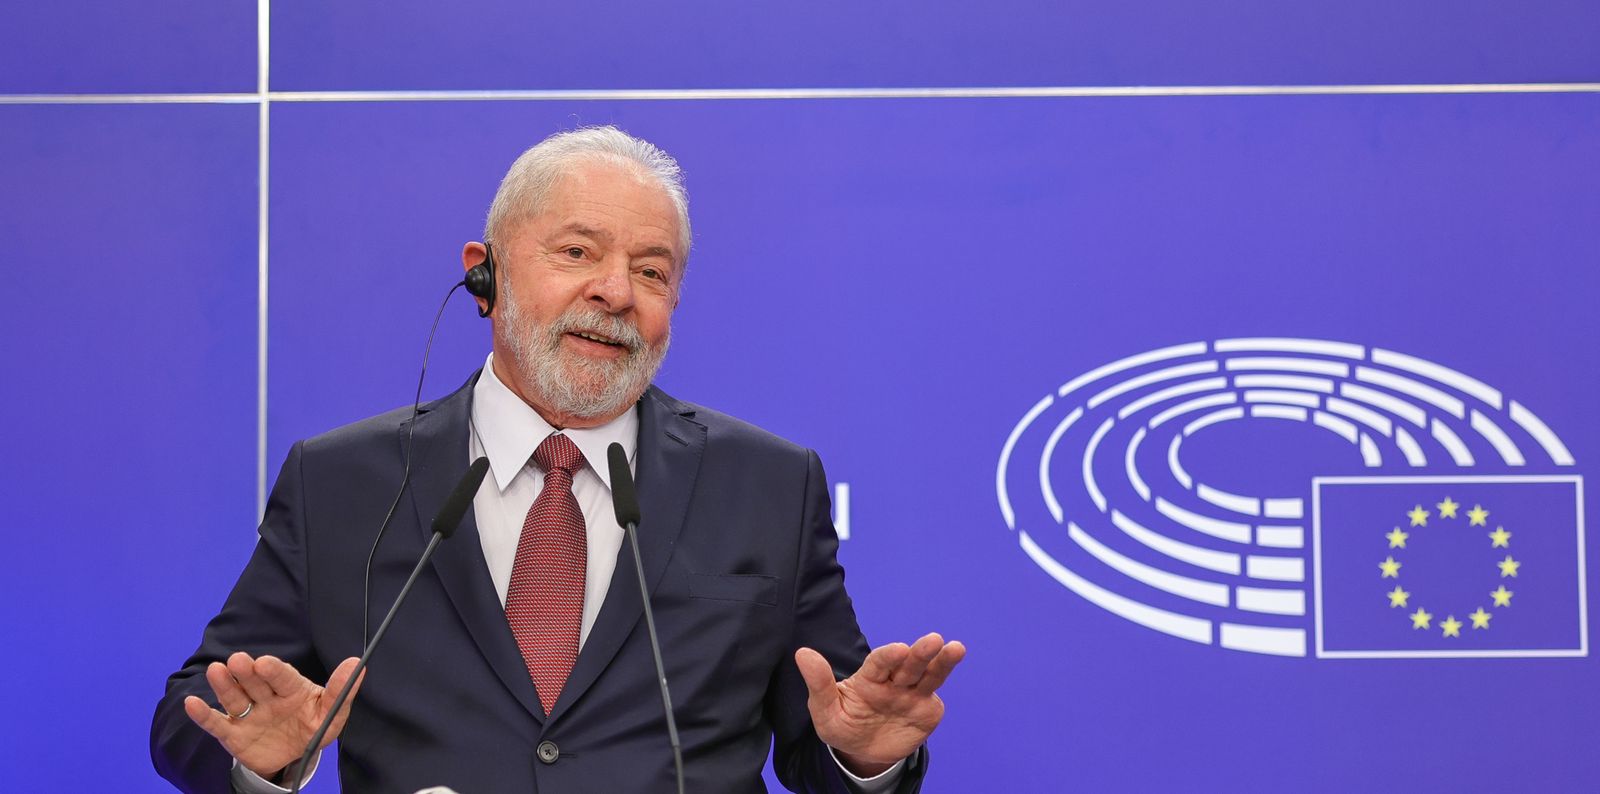 Discurso de Lula no Parlamento deixou UE preocupada por não falar de corrupção